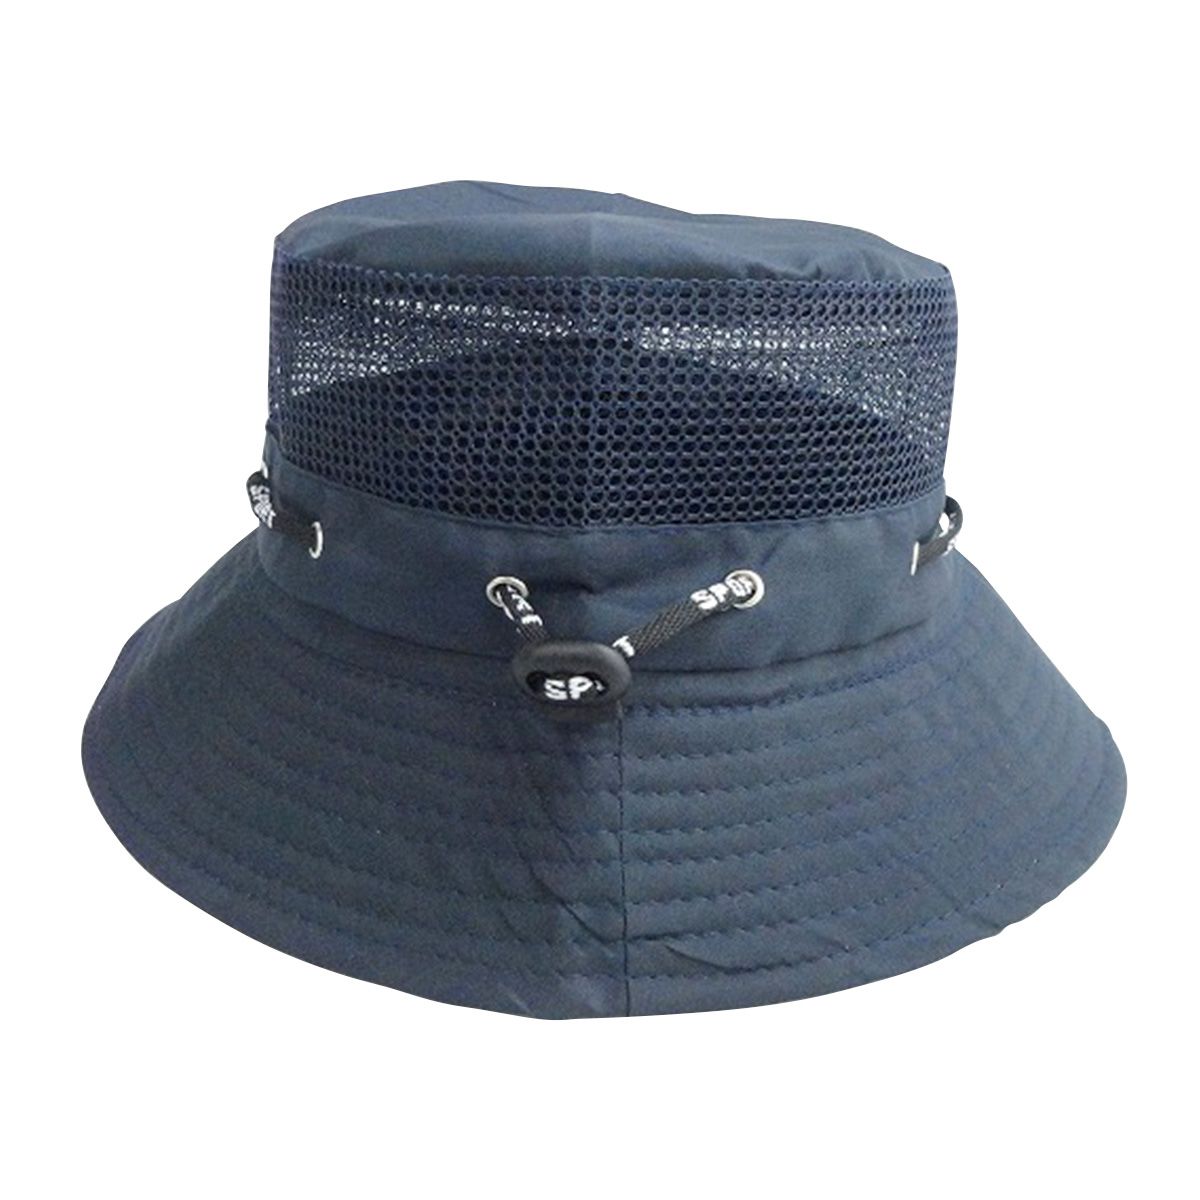 【OUTLET】帽子 つば広 夏用 メッシュハット ネイビー 365575